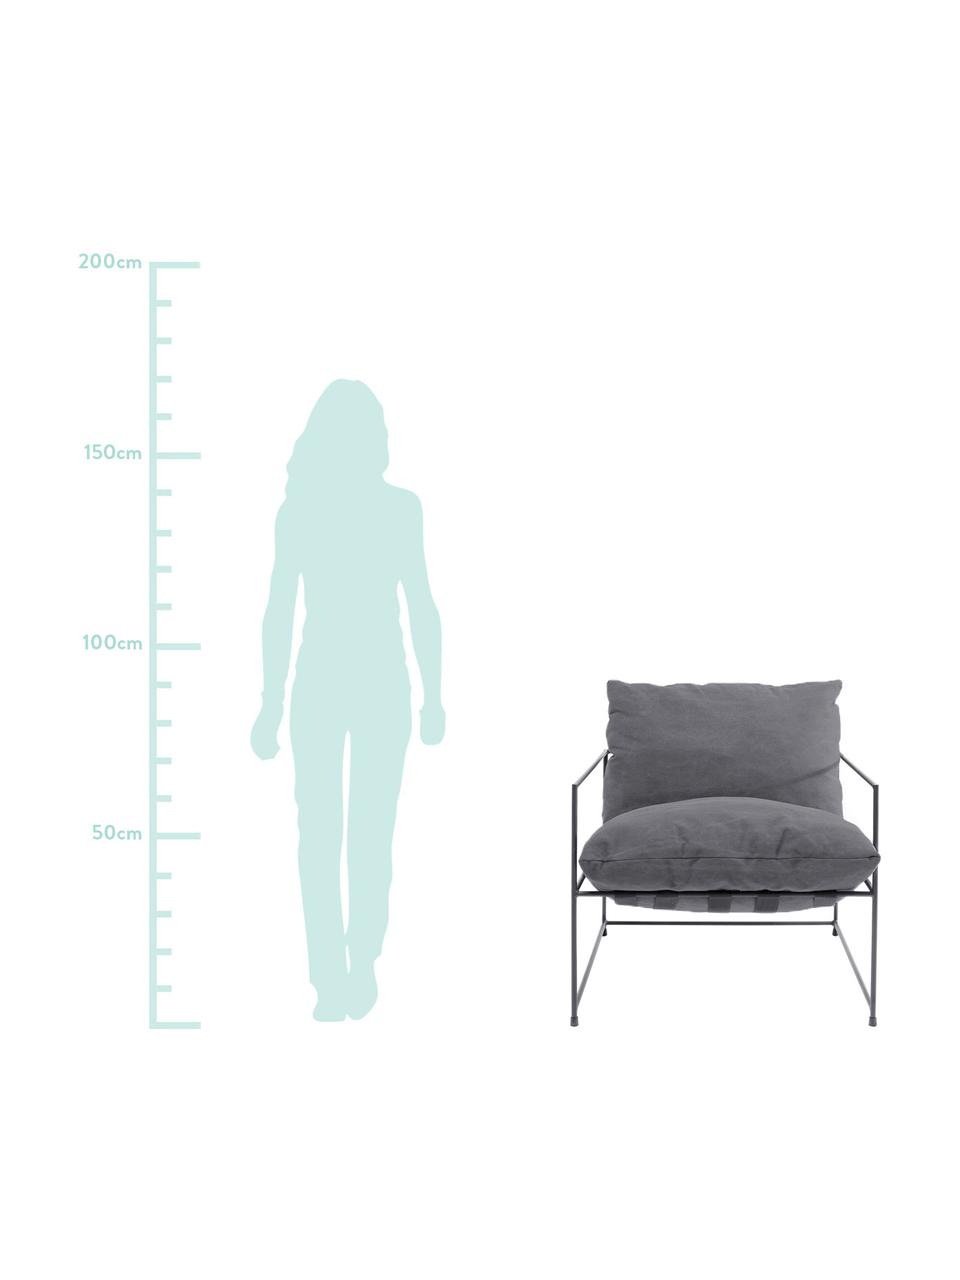 Moderner Sessel Cornwall in Grau, Bezug: 85% Baumwolle, 15% Polyes, Gestell: Stahl, pulverbeschichtet, Webstoff Grau, B 72 x T 75 cm